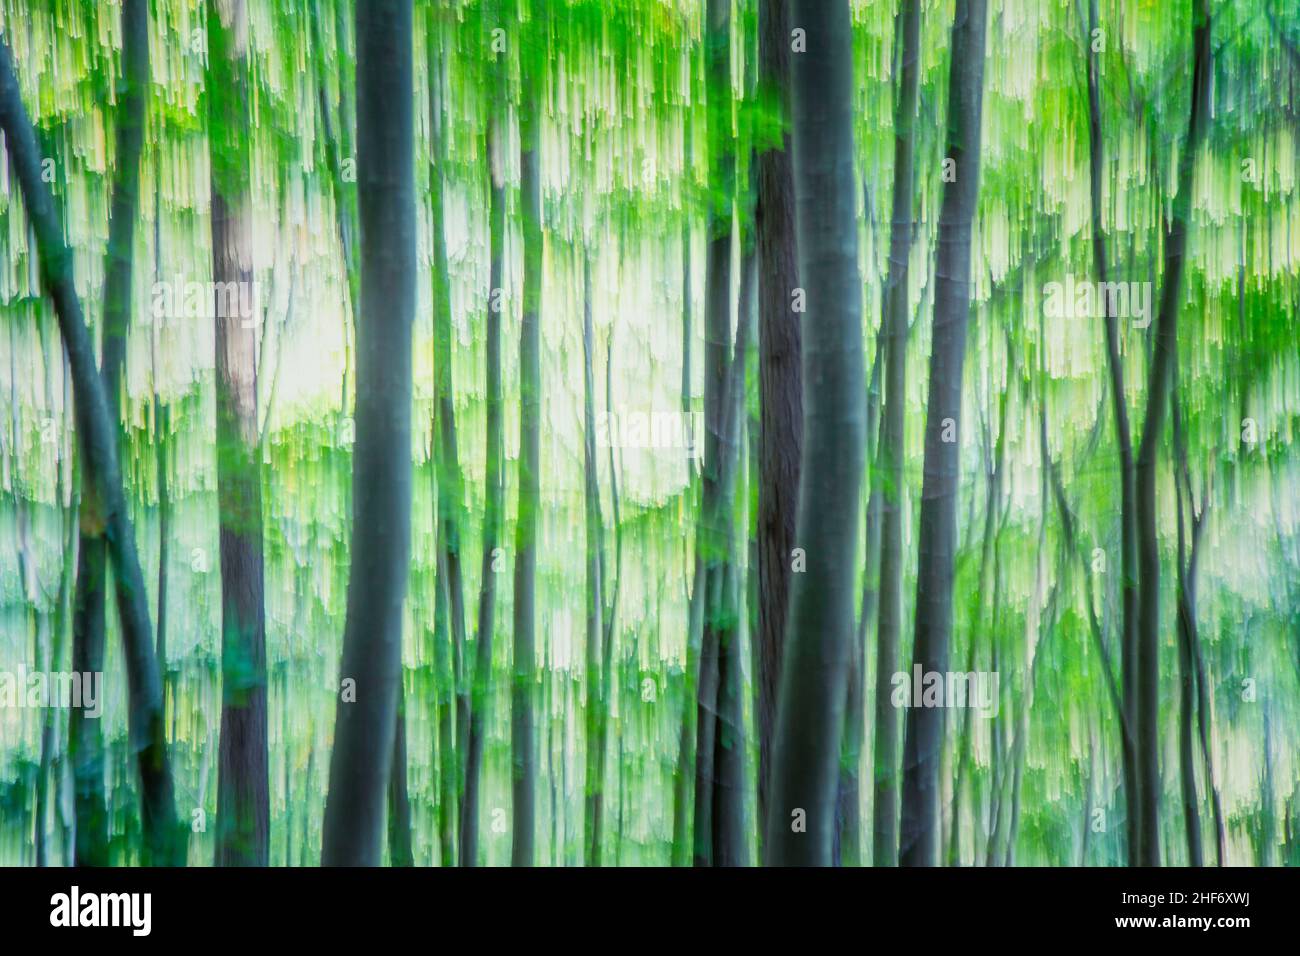 Image abstraite, temps de printemps dans la forêt, tons verts Banque D'Images